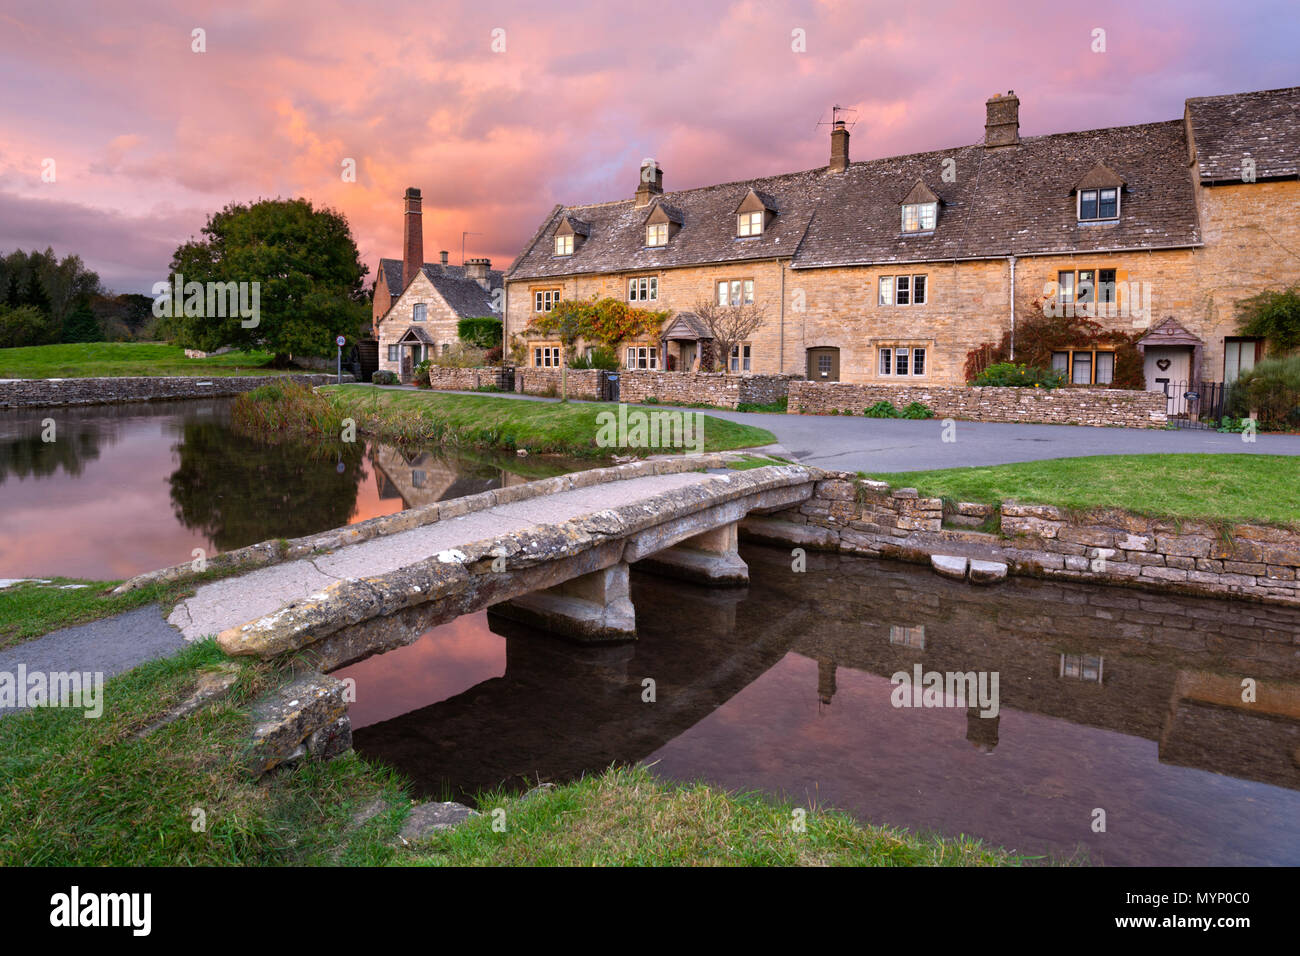 Pont de pierre et cottages en pierre de Cotswold par l'oeil de la rivière au coucher du soleil, Lower Slaughter, Cotswolds, Gloucestershire, Angleterre, Royaume-Uni, Europe Banque D'Images